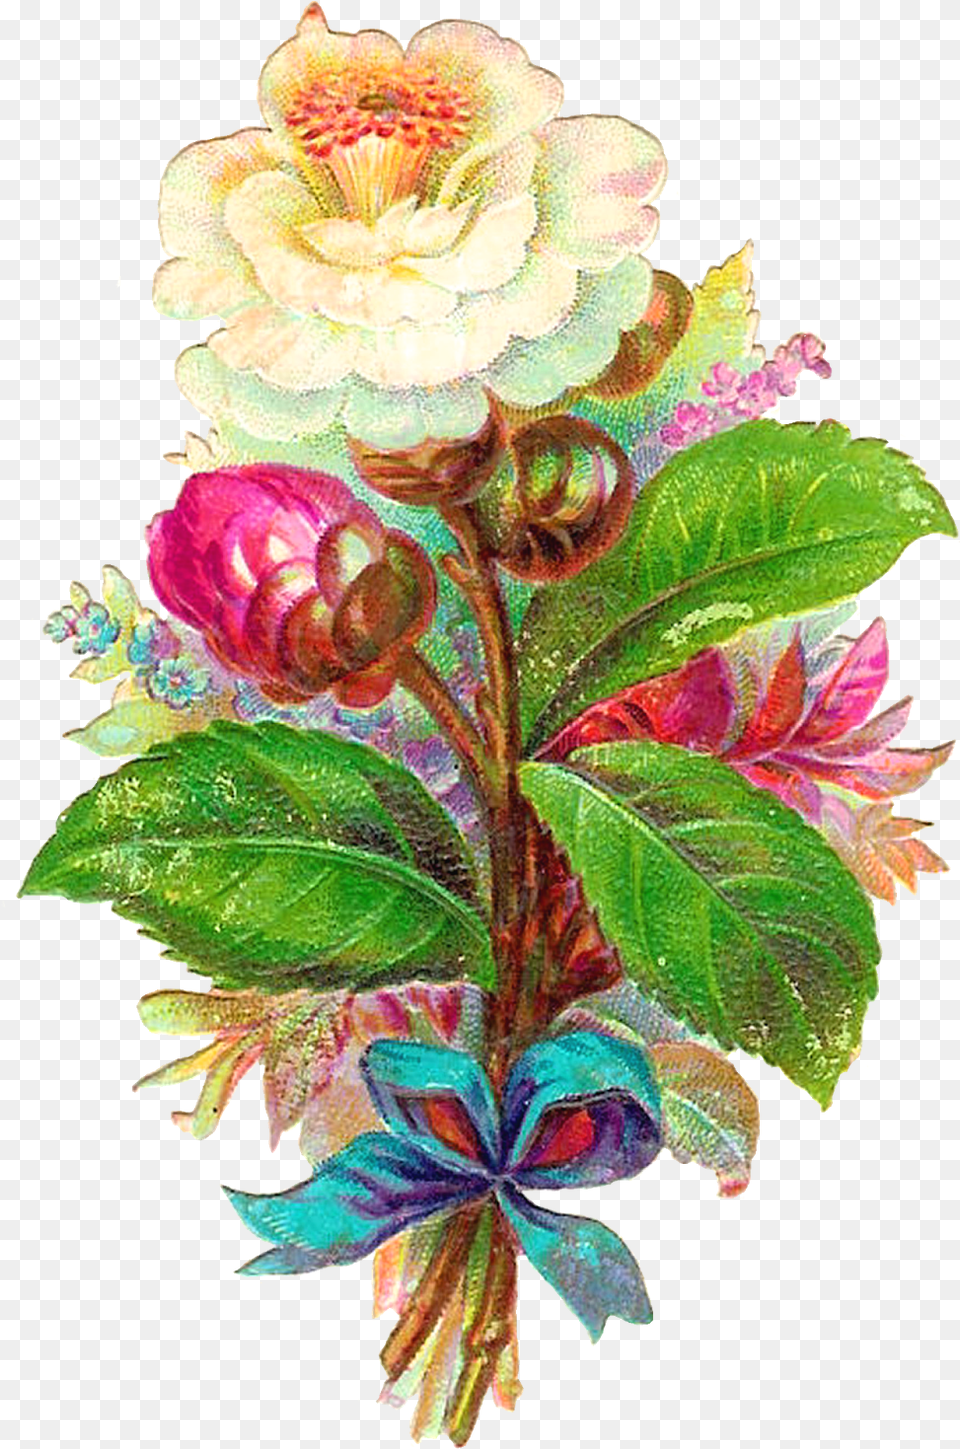 Antique Images Digital Flower White Camellia Vintage Clip Art, Graphics, Floral Design, Plant, Leaf Free Png Download